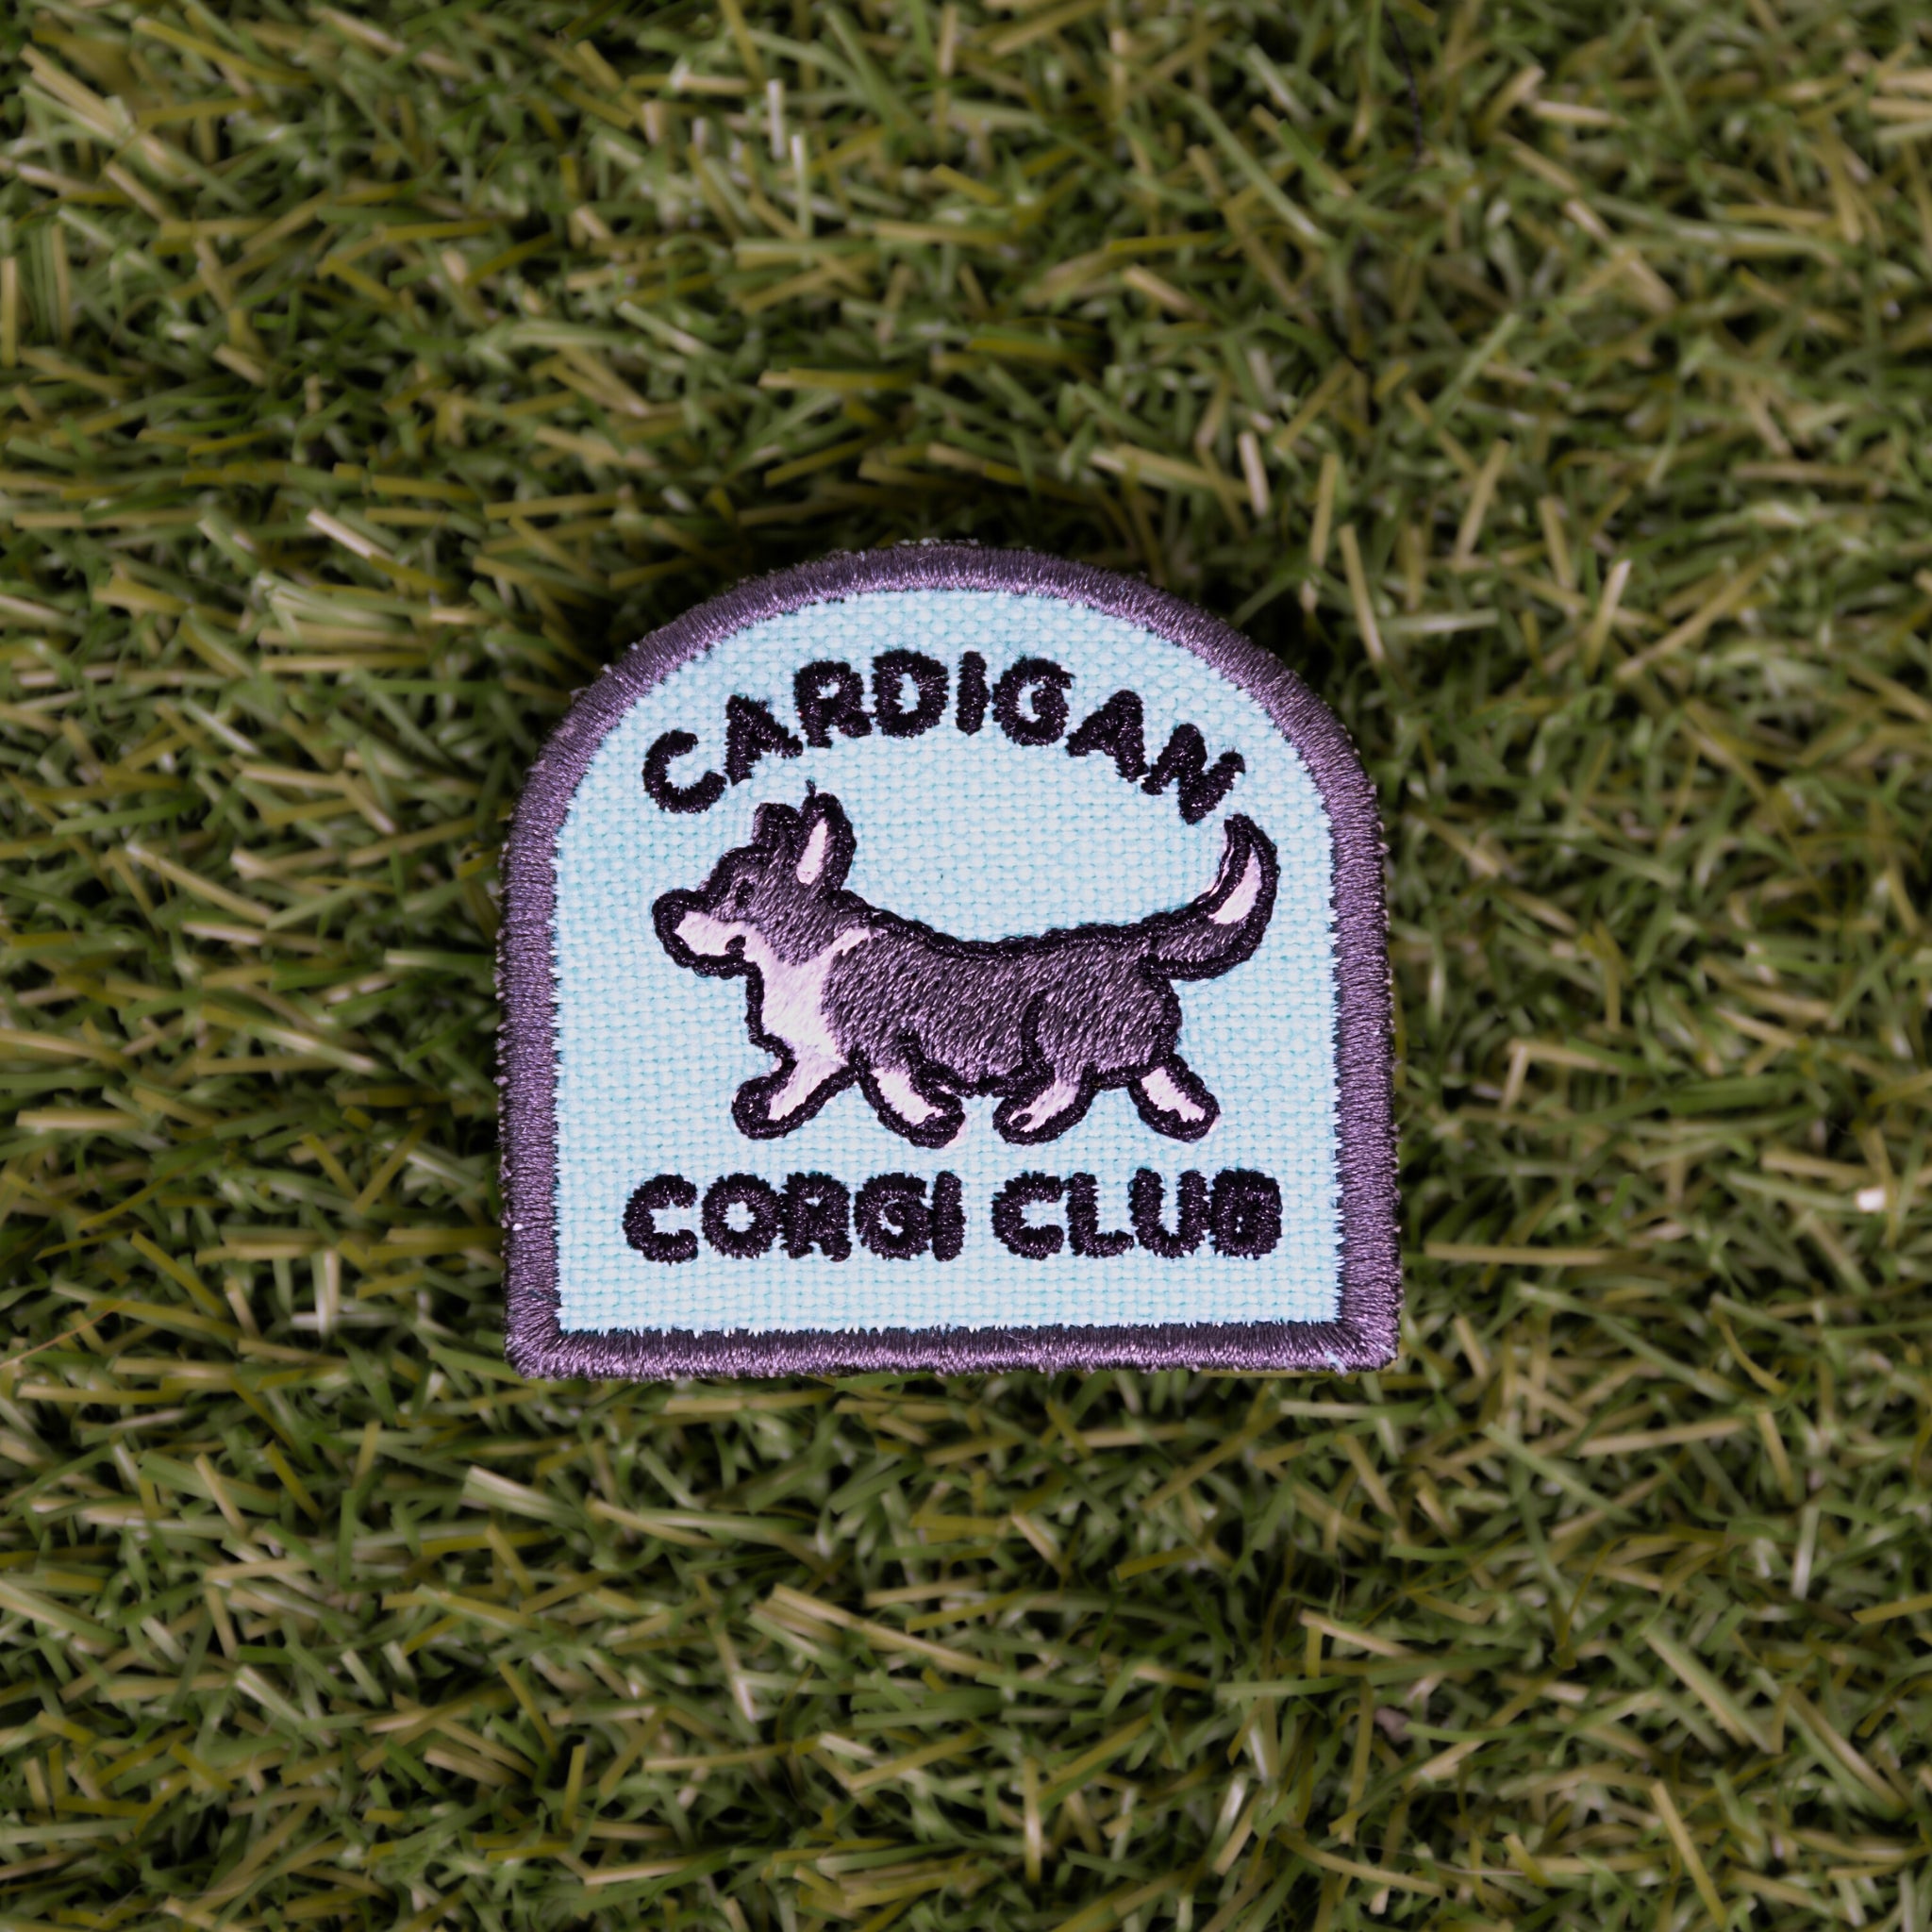 Cardigan Corgi Club Arch Patch